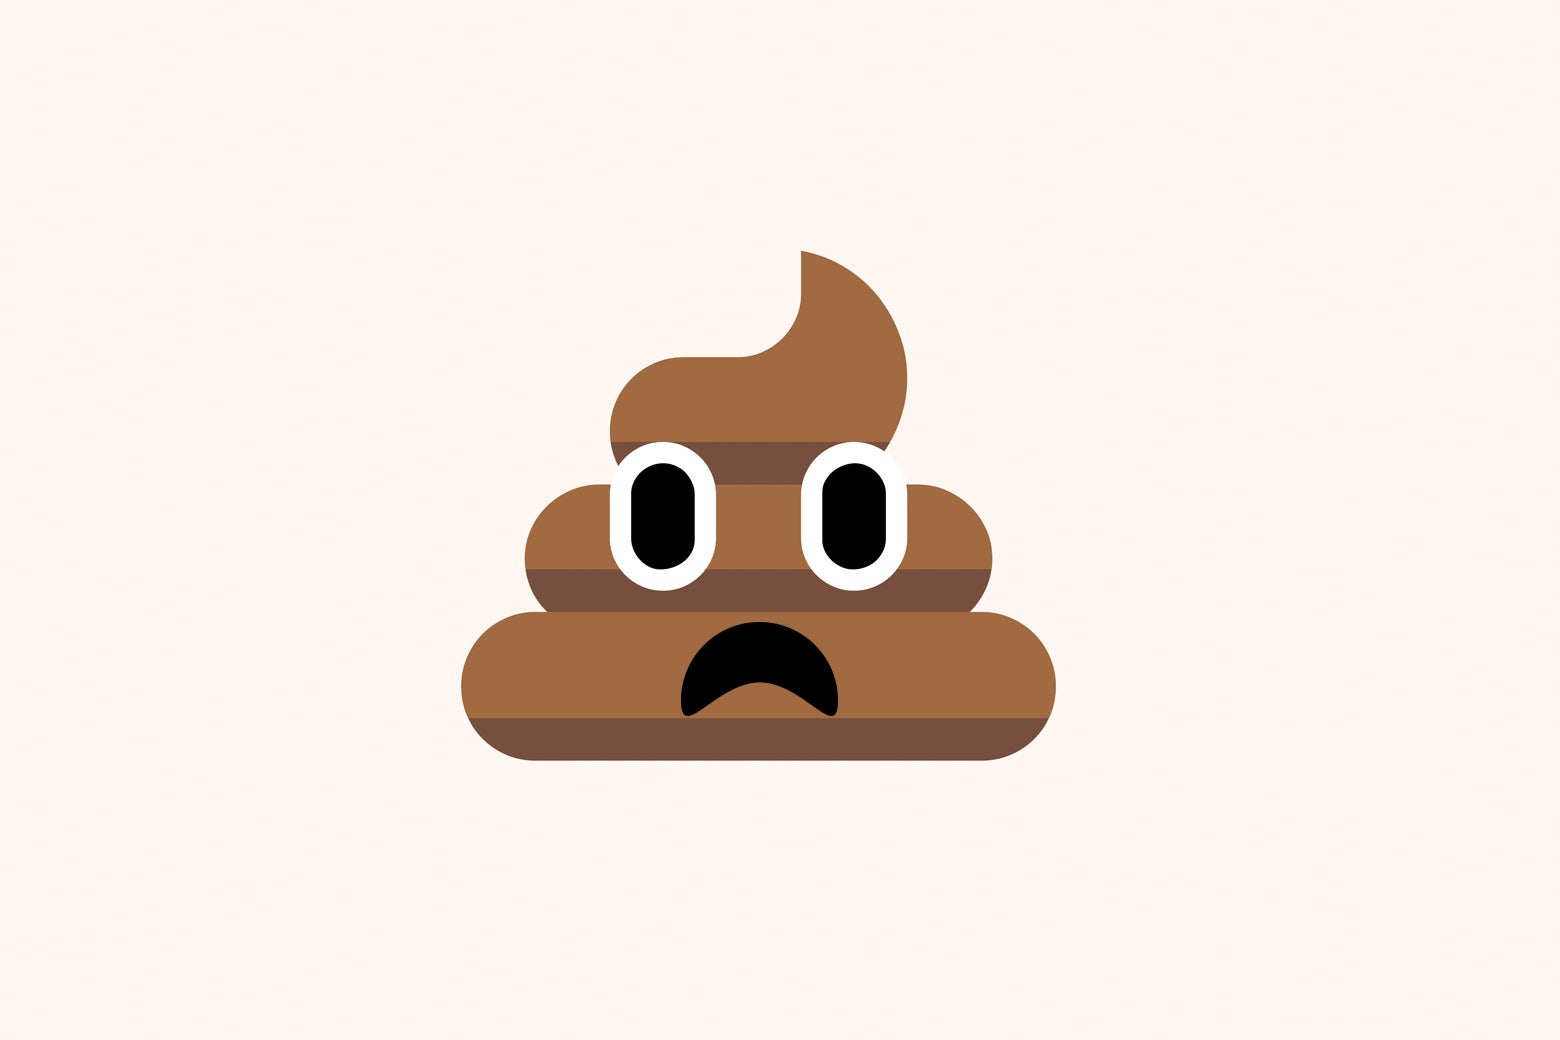 Poop emoji frowning in dismay